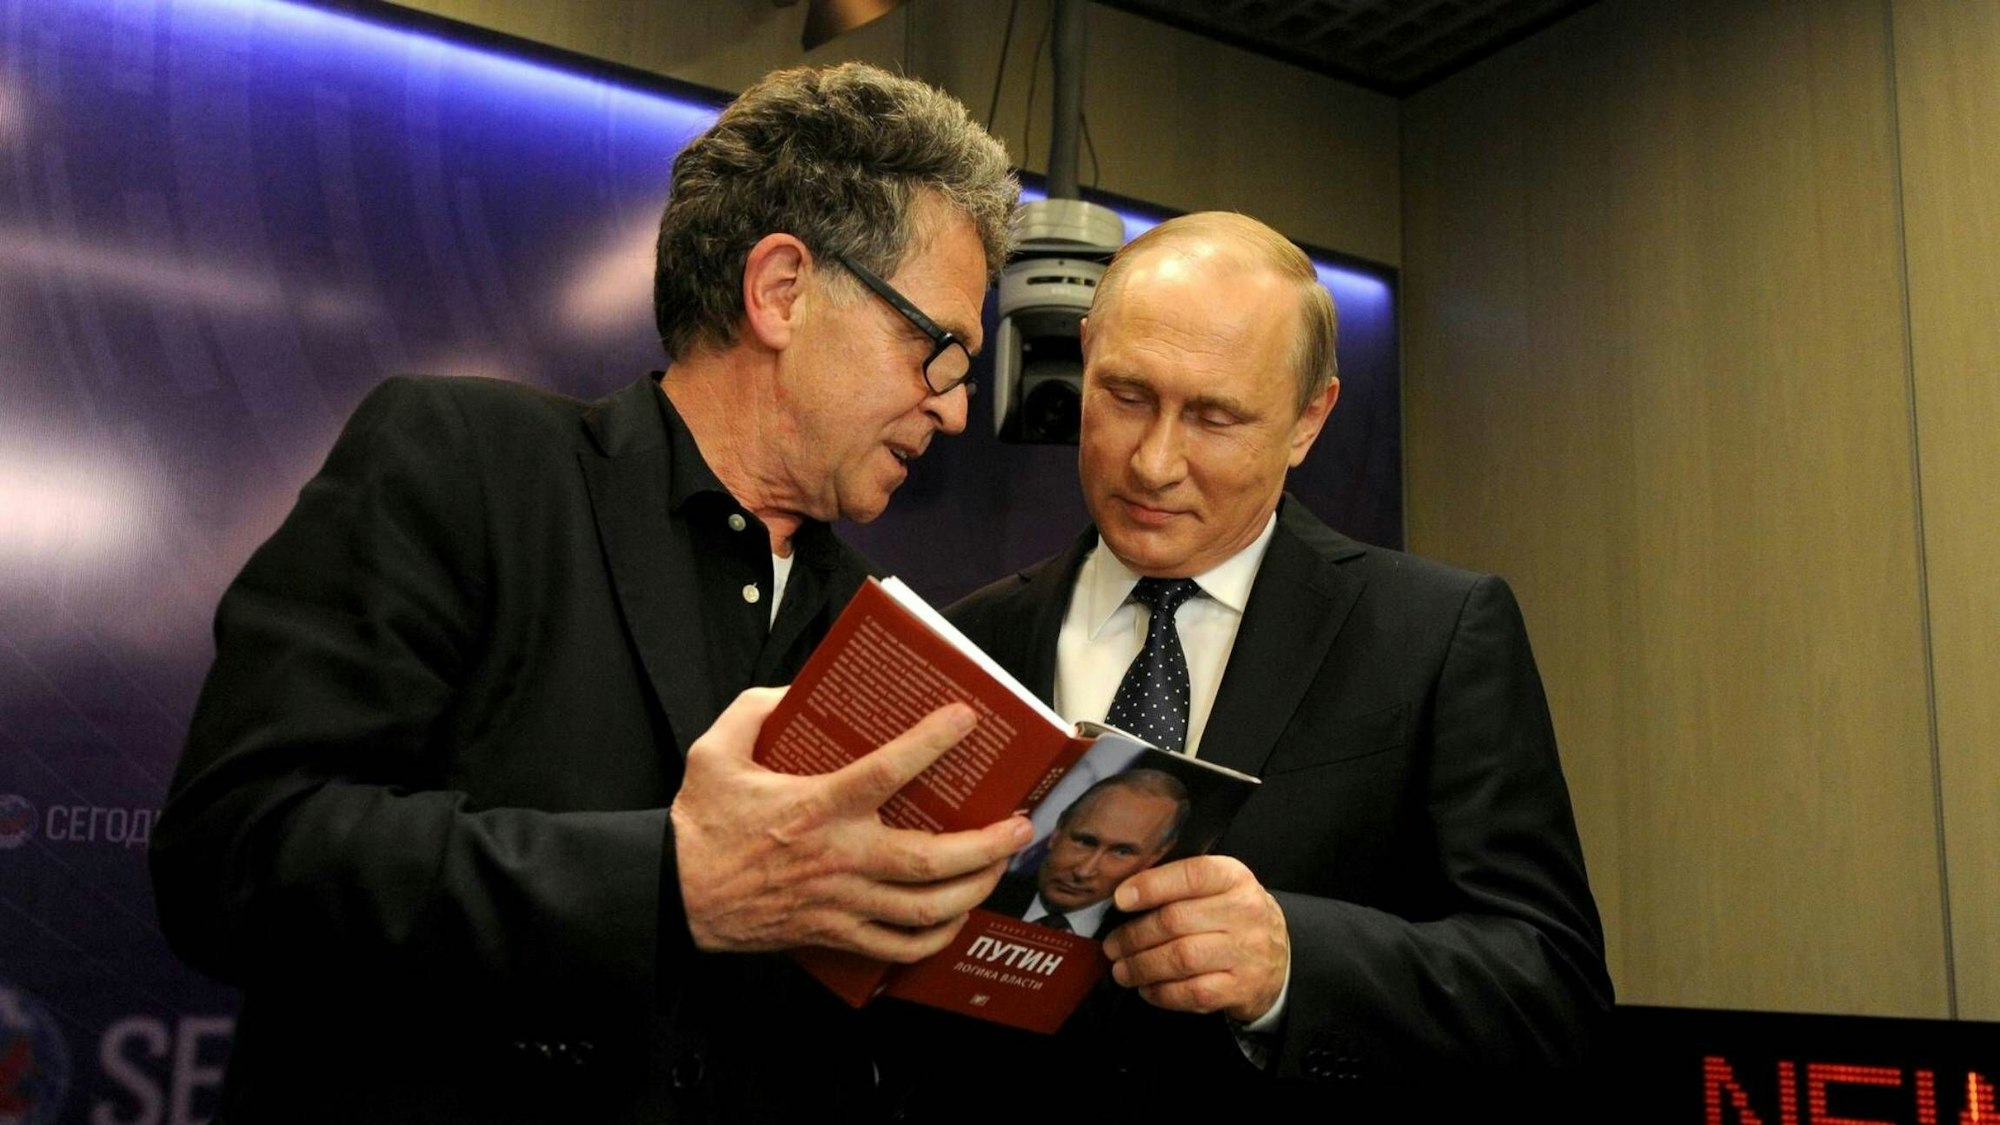 Hubert Seipel (l.) im Jahr 2016 mit dem russischen Präsidenten Wladimir Putin in Moskau.